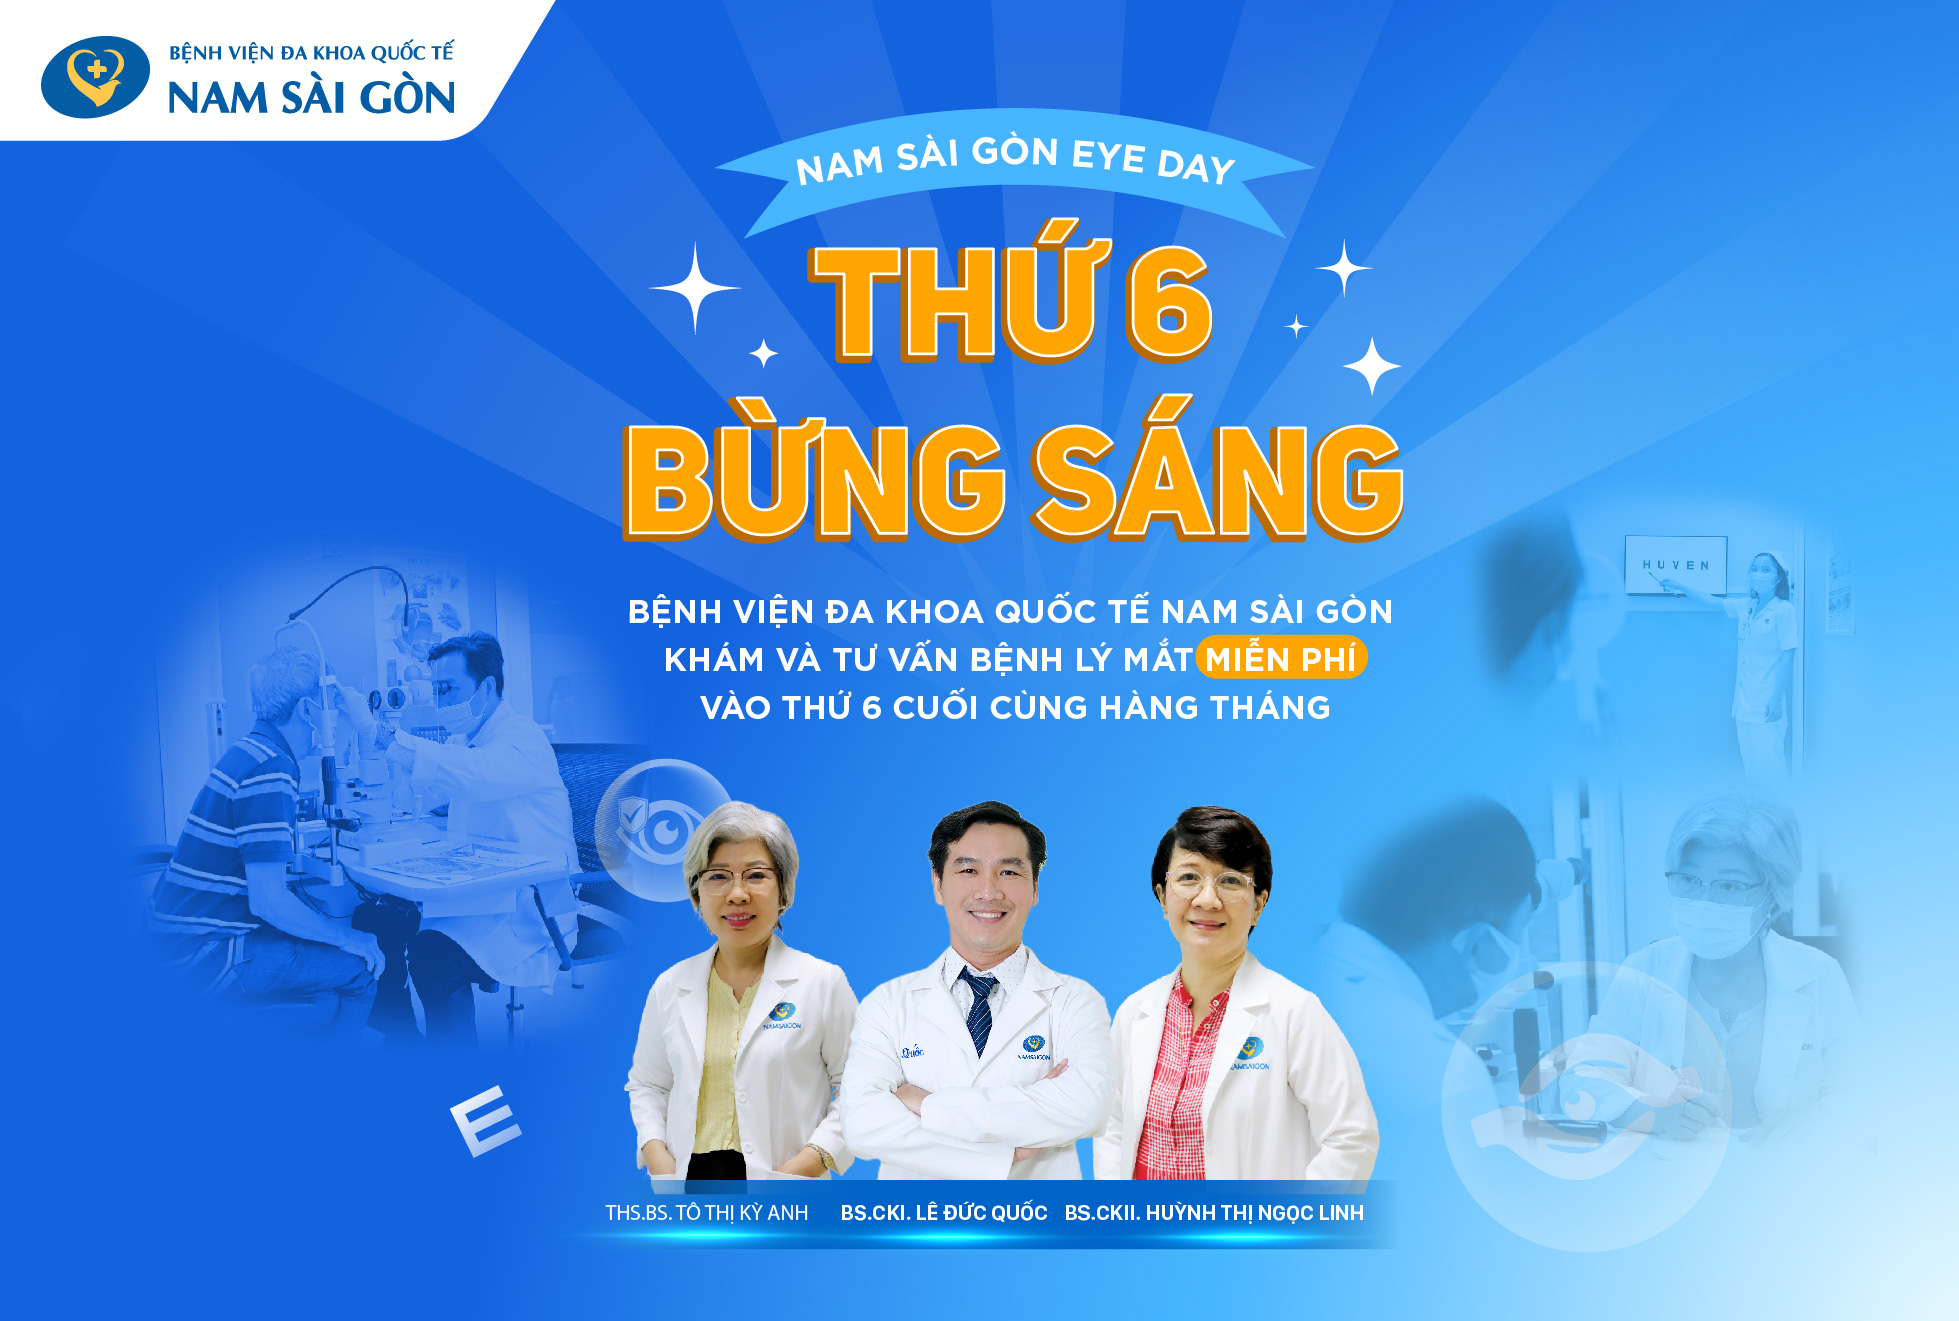 Thứ 6 cuối cùng của tháng - Khám mắt miễn phí tại Bệnh viện Đa khoa Quốc tế Nam Sài Gòn